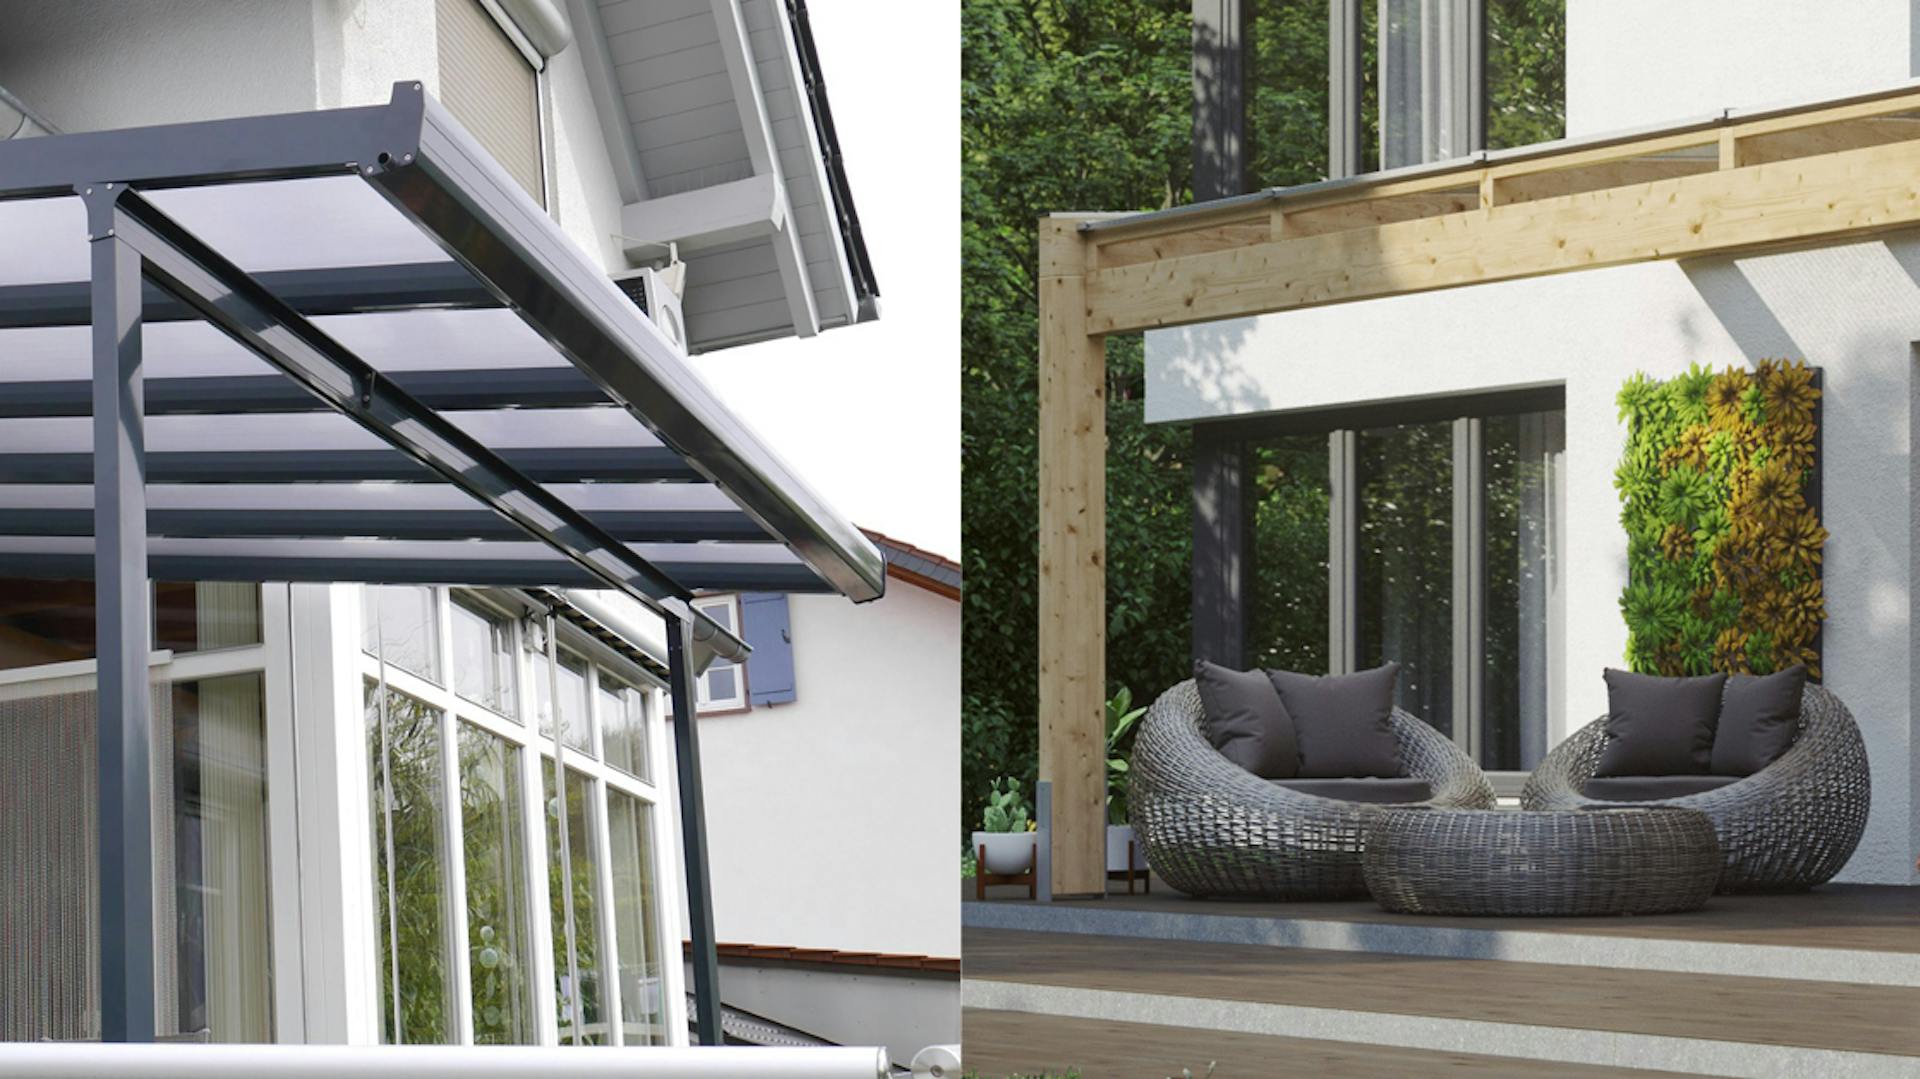 Tetto per terrazza in alluminio color antracite e tetto per terrazza in legno senza verniciatura colorata a confronto